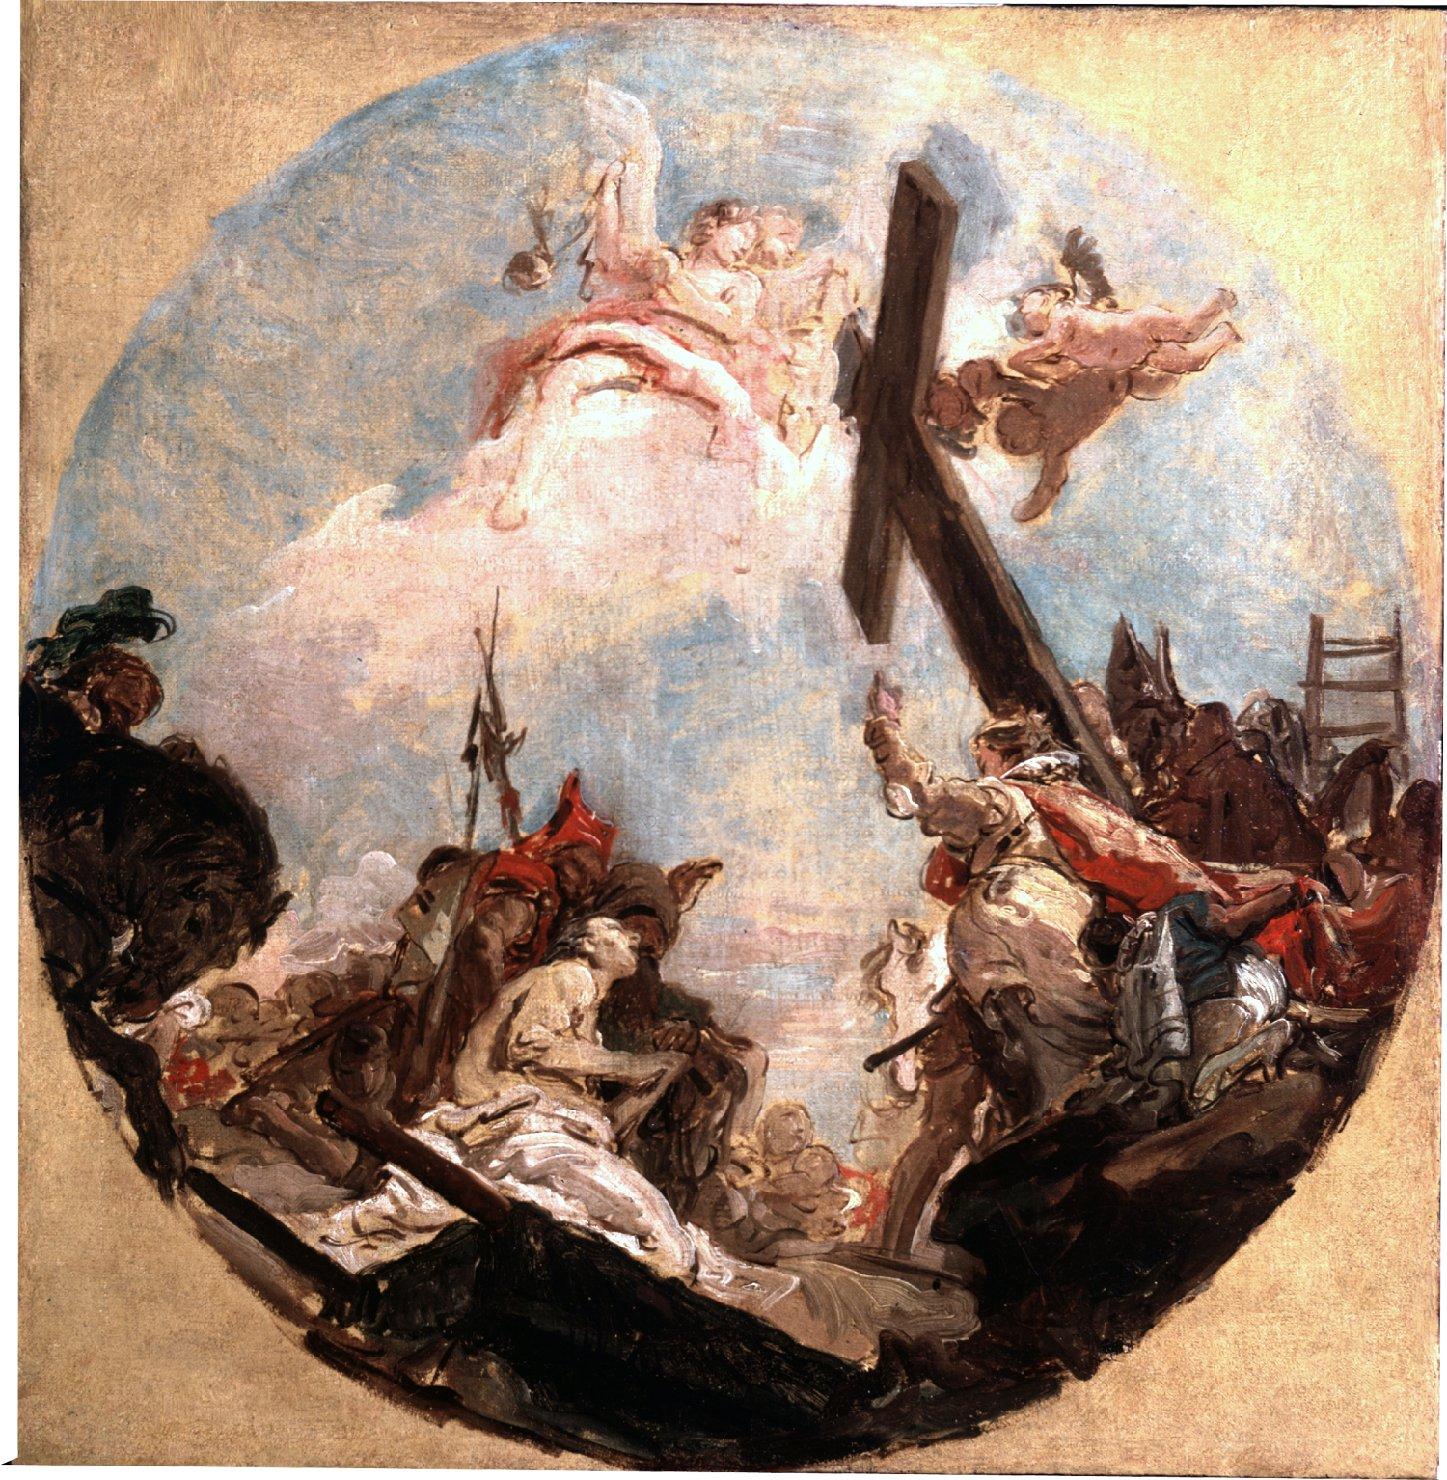 La scoperta della vera Croce e sant'Elena, Sant'Elena ha la visione della vera croce trasportata dagli angeli (dipinto) di Tiepolo Giovanni Battista (sec. XVIII)